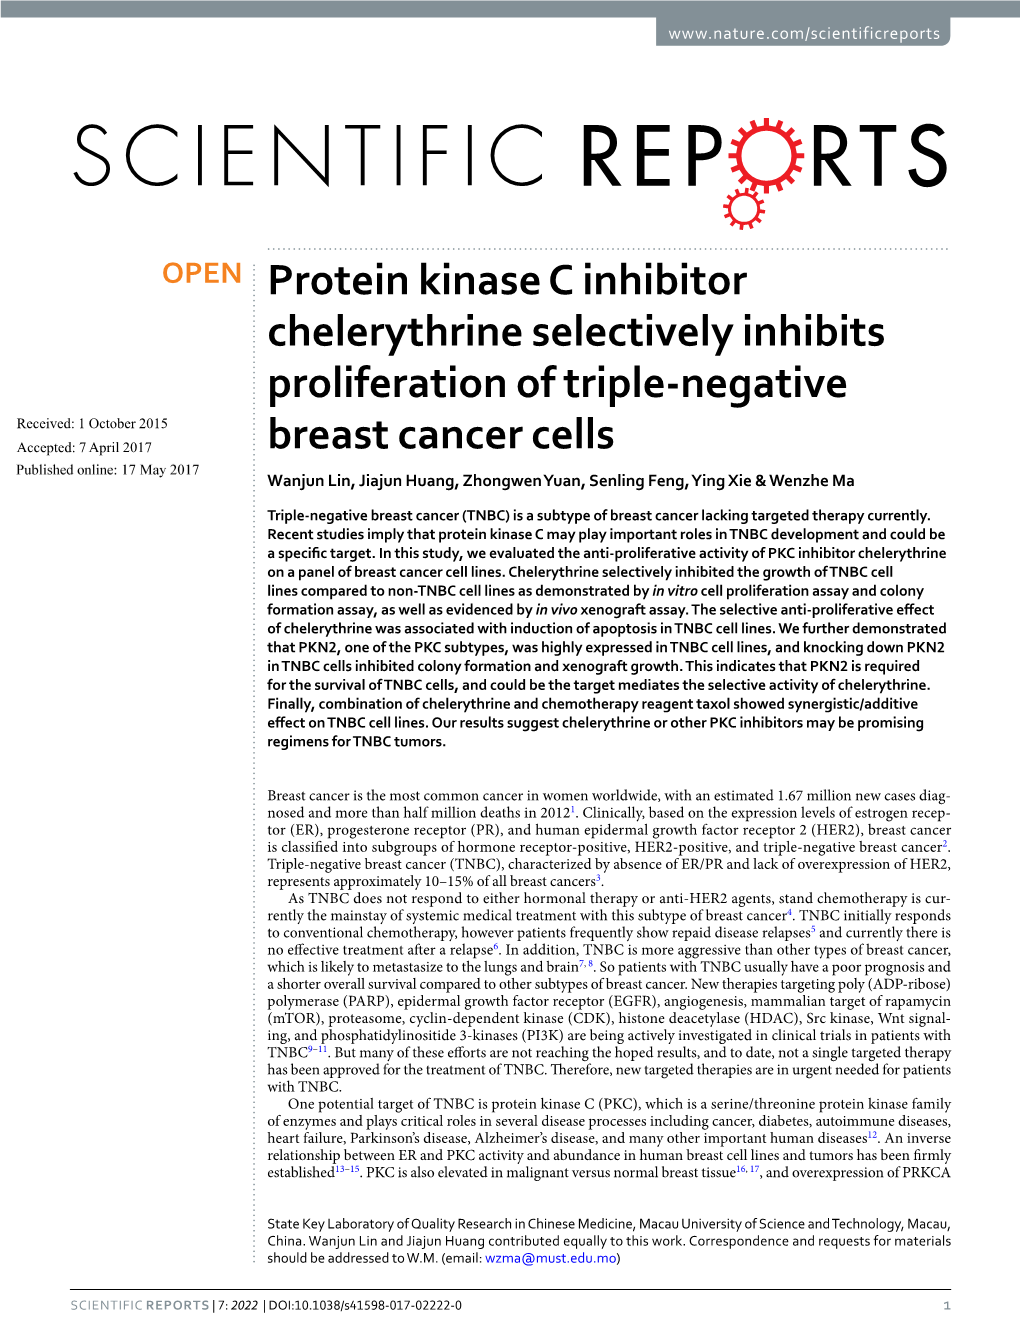 Protein Kinase C Inhibitor Chelerythrine Selectively Inhibits